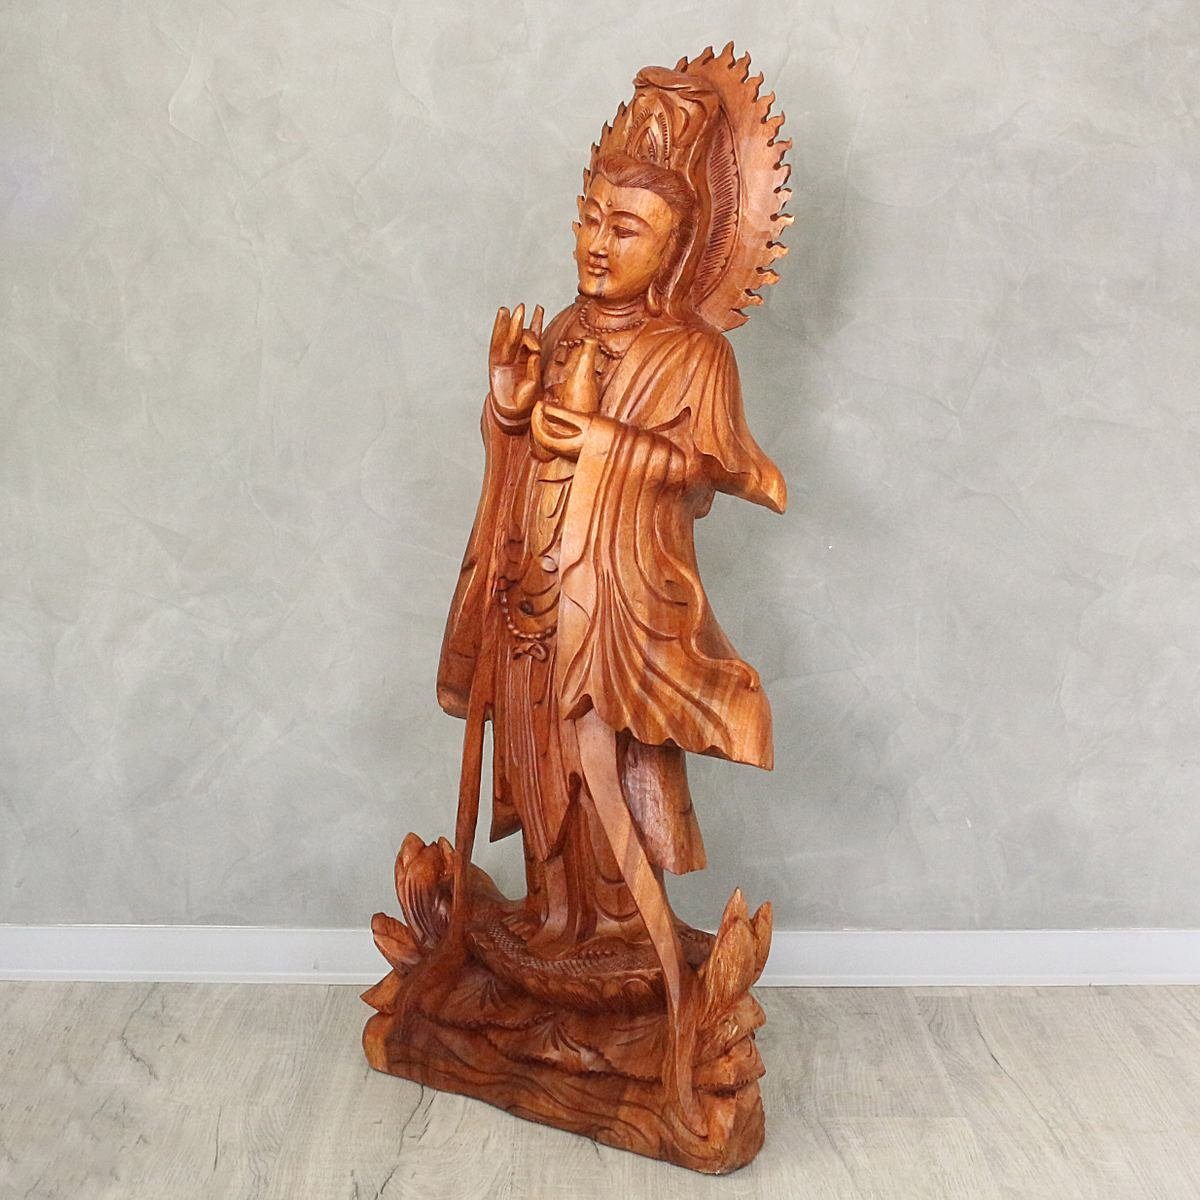 100 Ursprungsland (1 Guanyin Herstellung Figur St), im Yin Handarbeit Guan Skulptur Galerie in Oriental traditionelle cm Holz Dekofigur